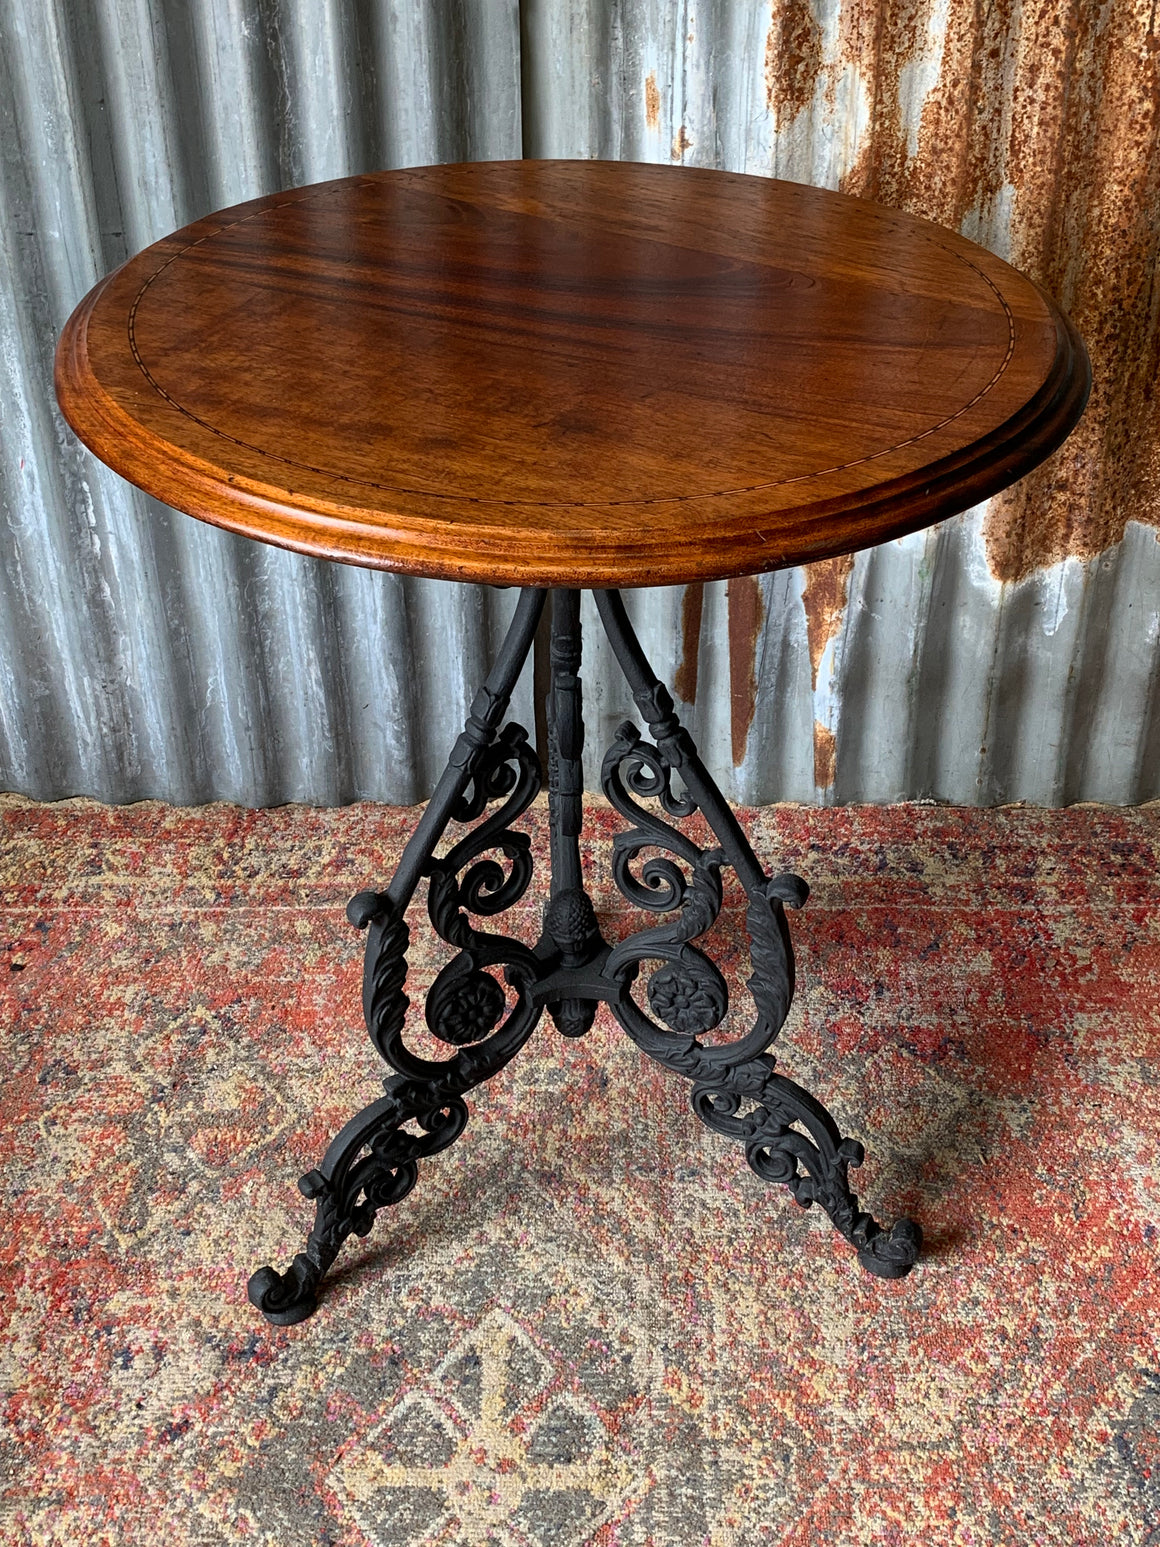 A black cast iron pub table